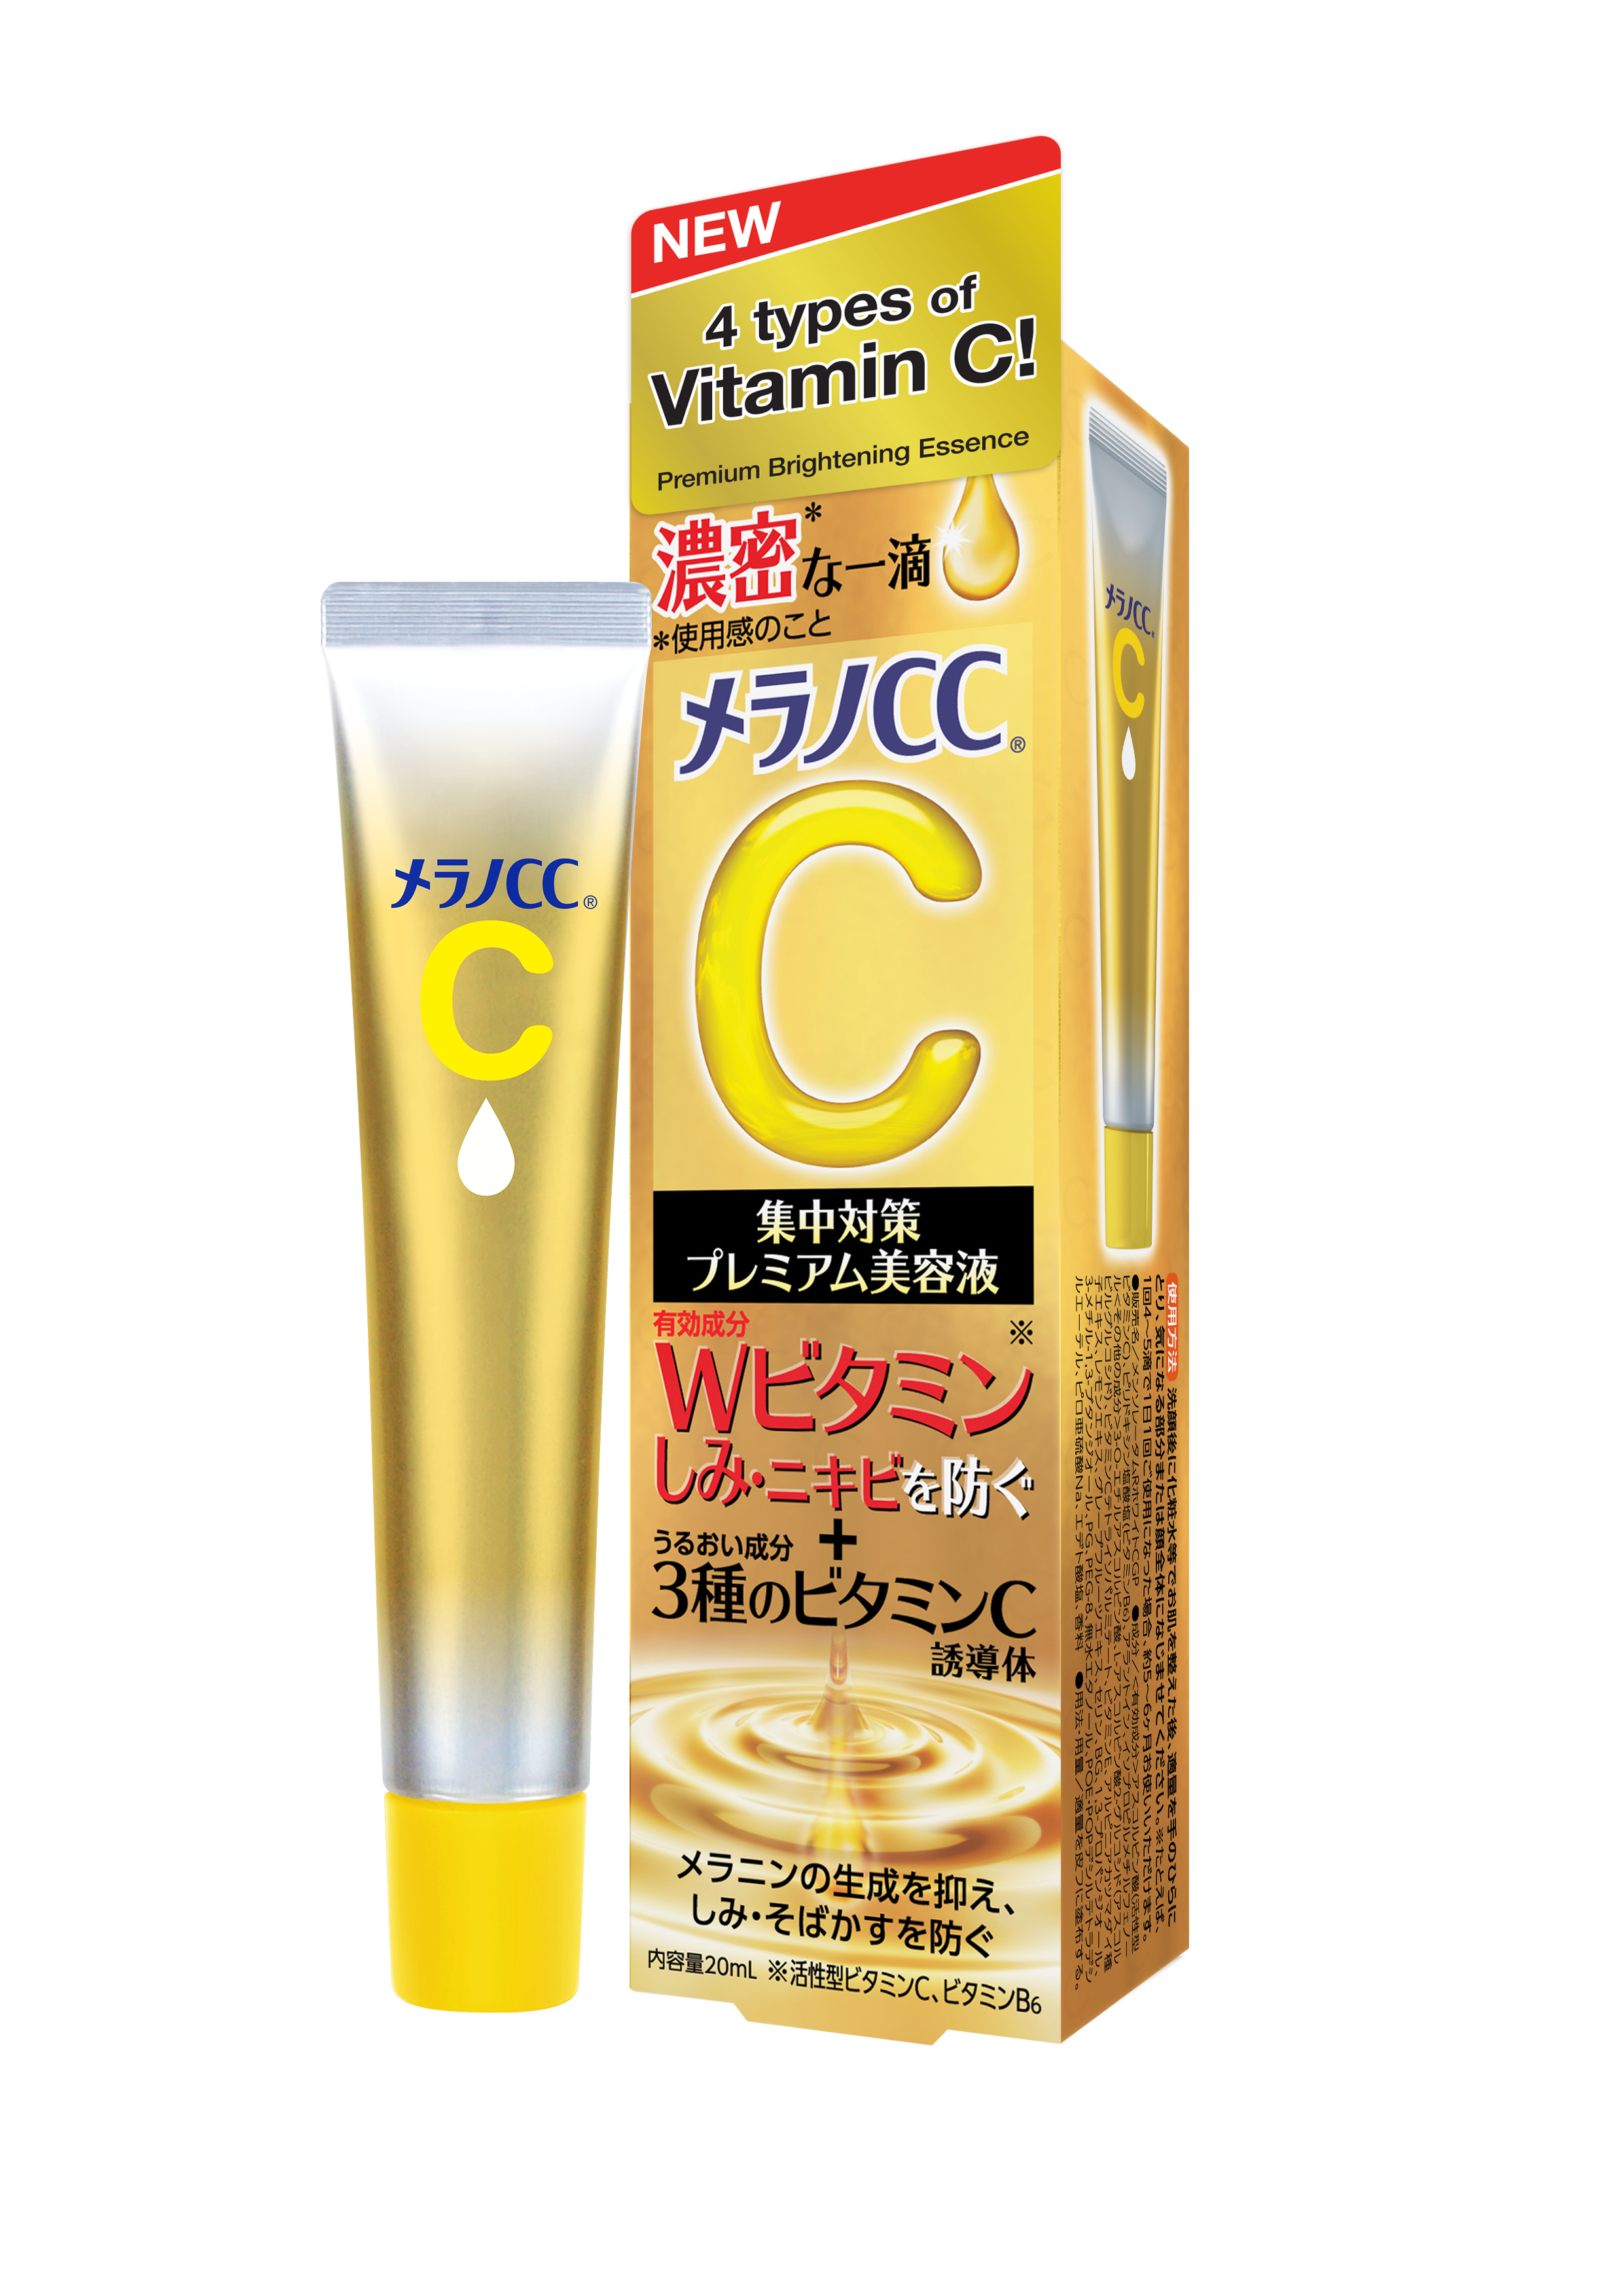 Vitamin C Premium Essence - melano